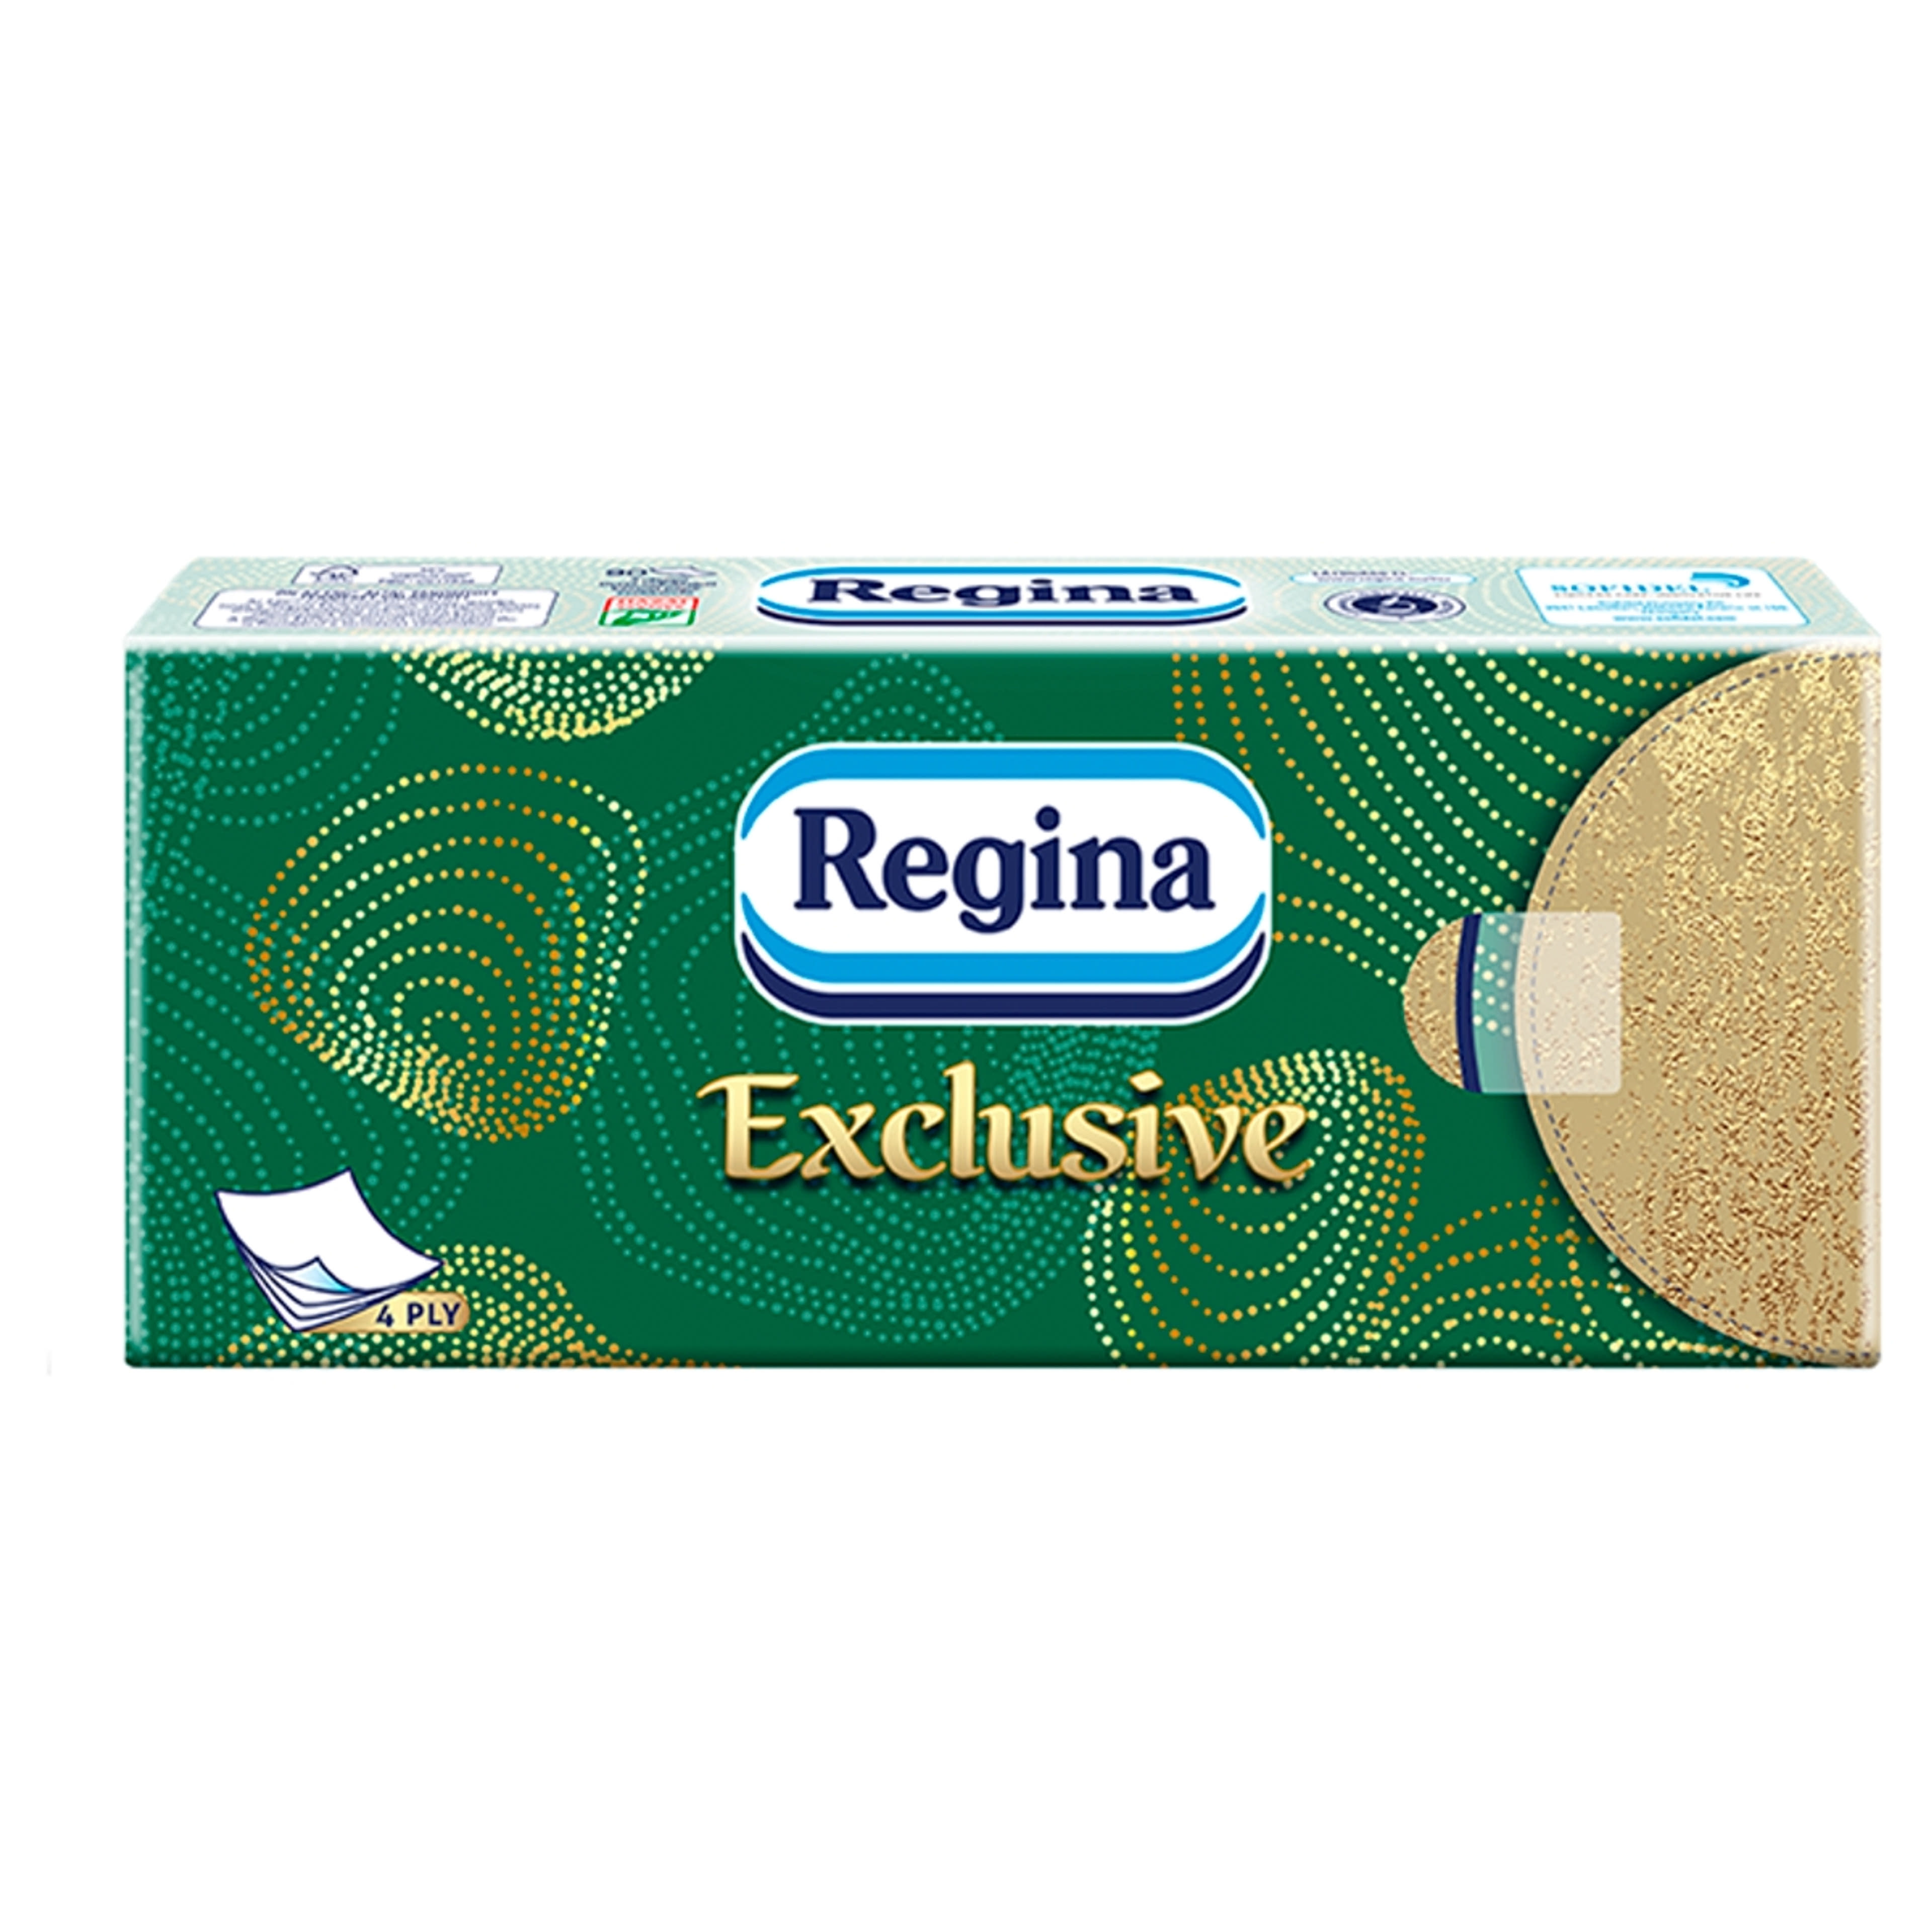 Regina Exclusive papír zsebkendő, 4 rétegű - 90 db